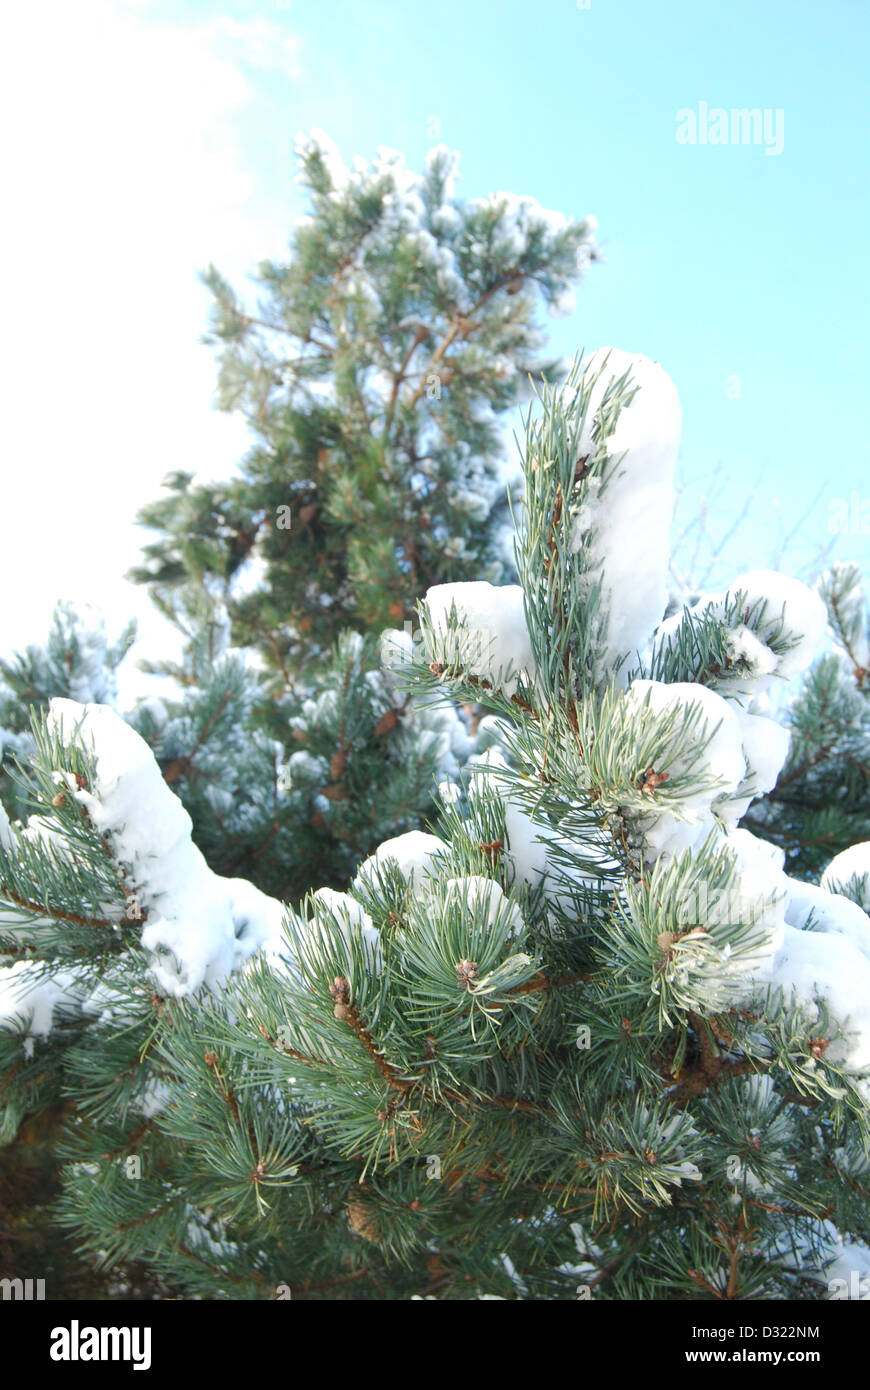 Einen schneebedeckten Baum im Winter vor einem strahlend blauen Himmelshintergrund mit jeder Farn dicht bedeckt mit Frost sehr malerisch Stockfoto